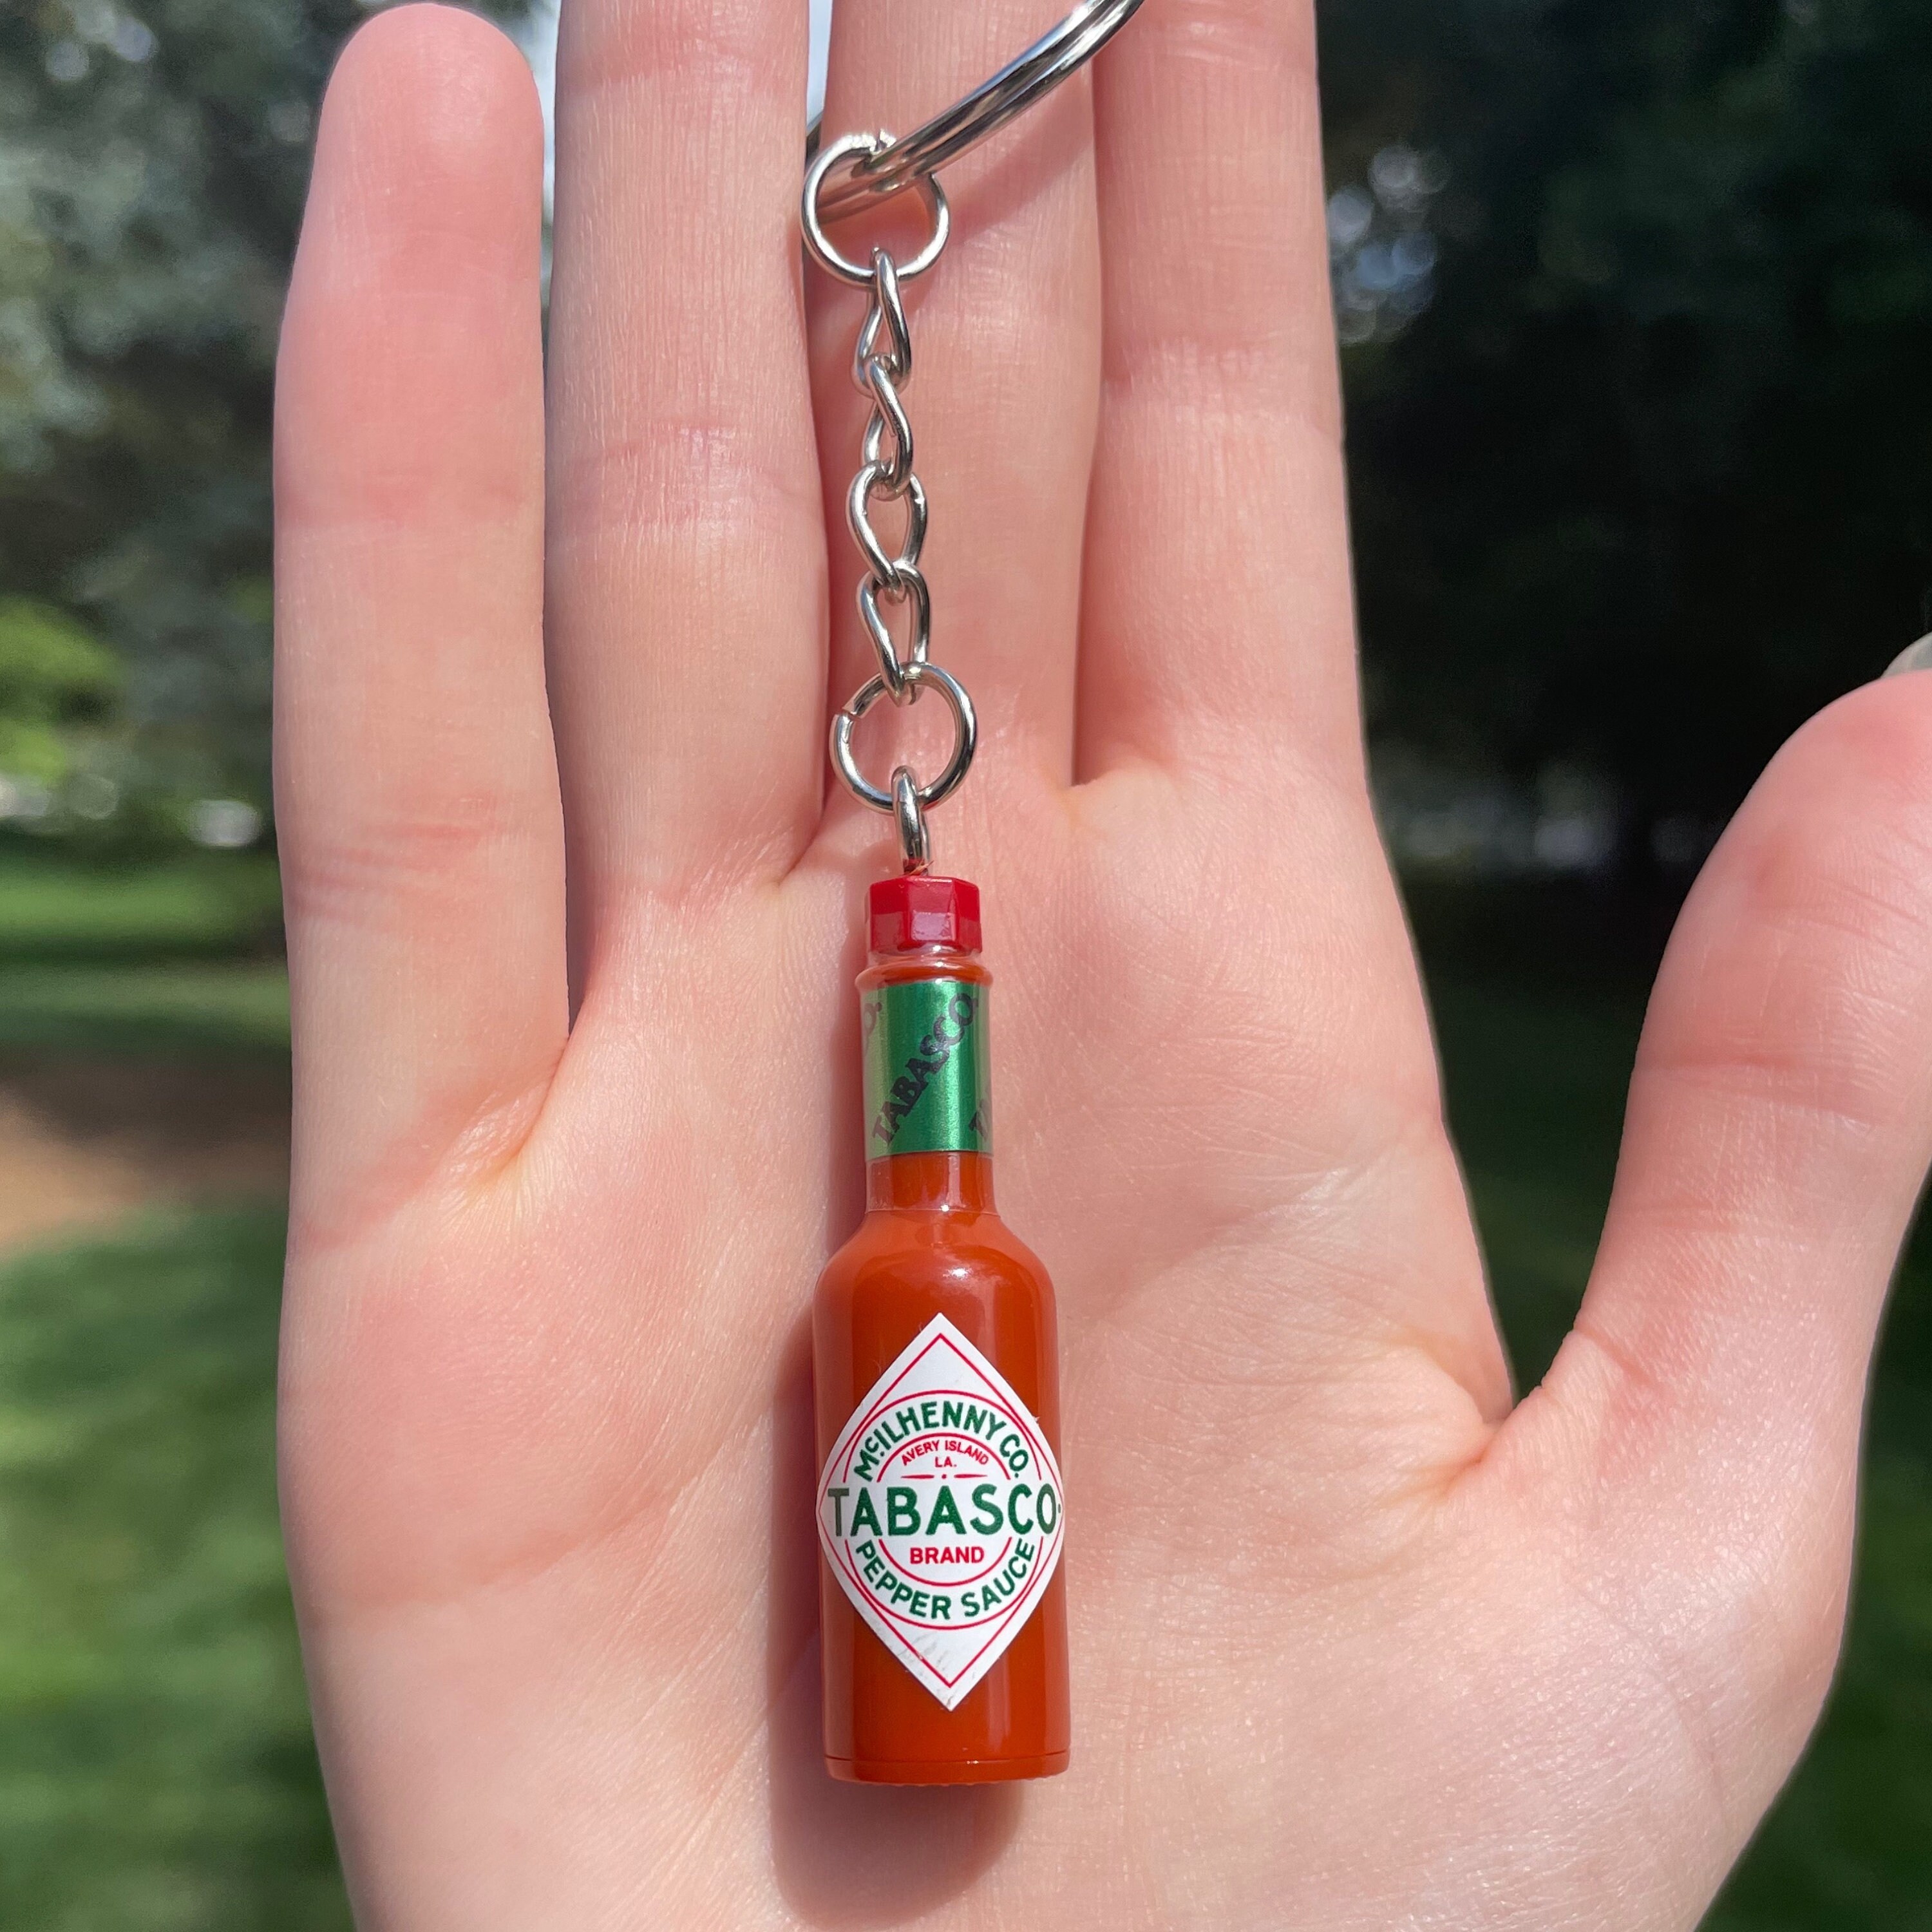 Hot Sauce keychain, franks, food keychain, mini keychain, novelty gift